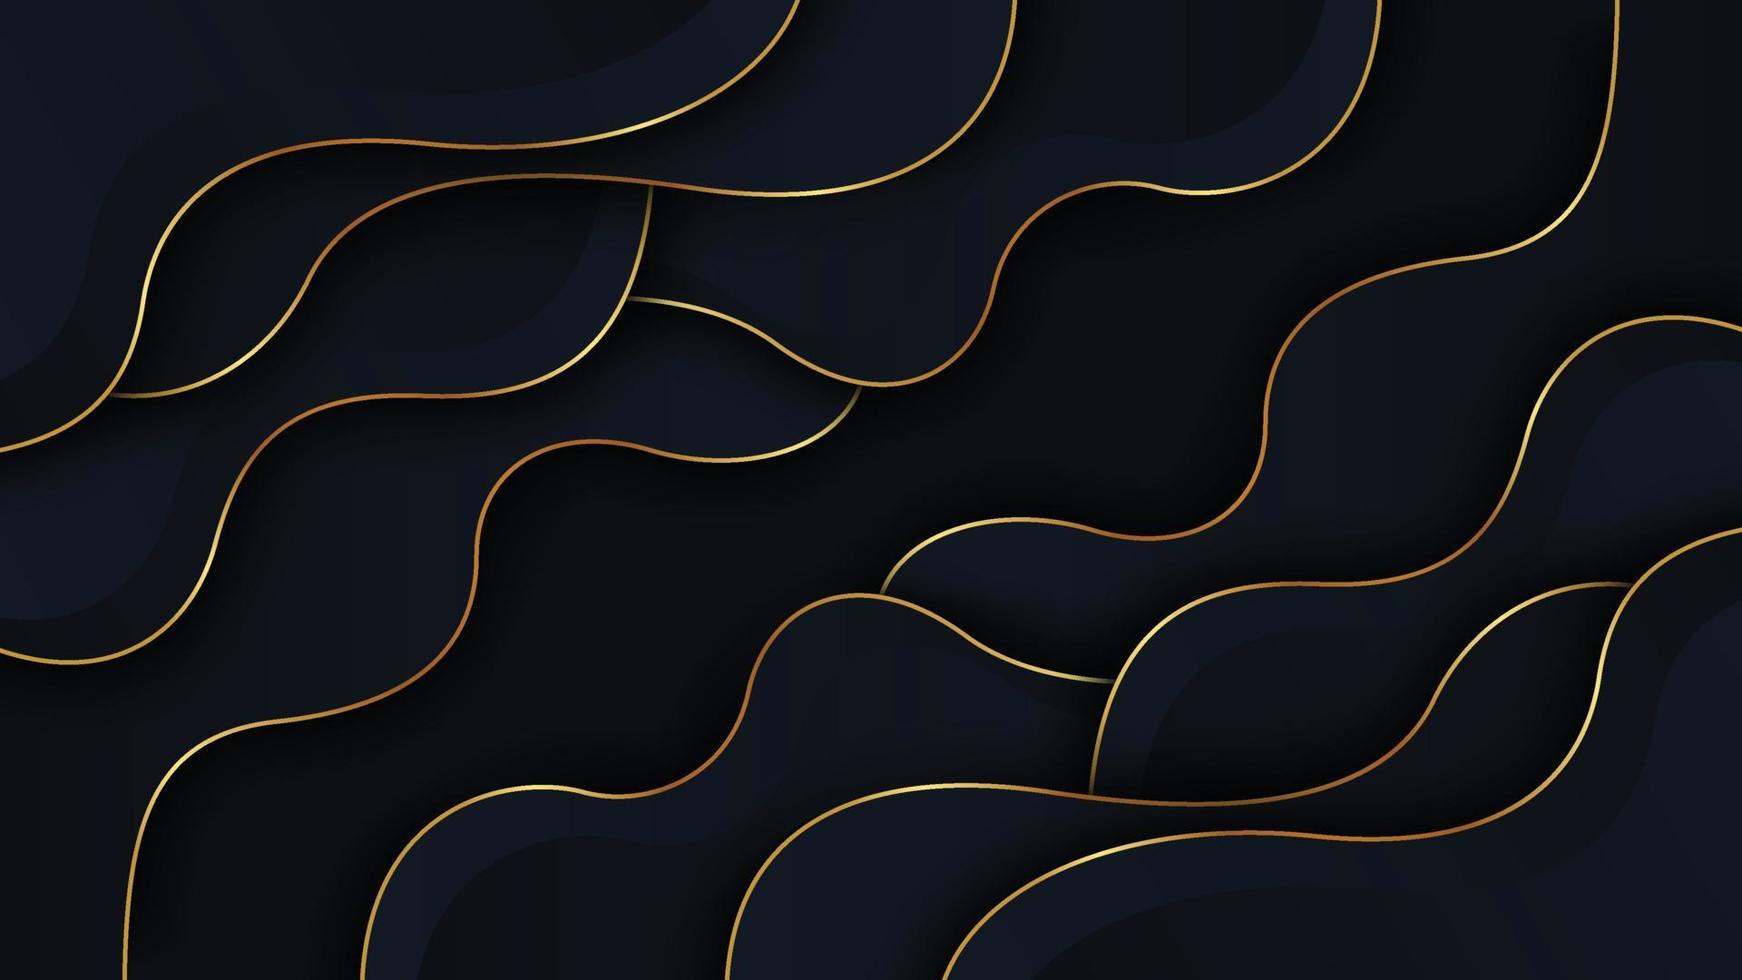 lujosa combinación azul marino oscuro con diseño de fondo de líneas doradas. concepto de fondo negro moderno estilo 3d. vector